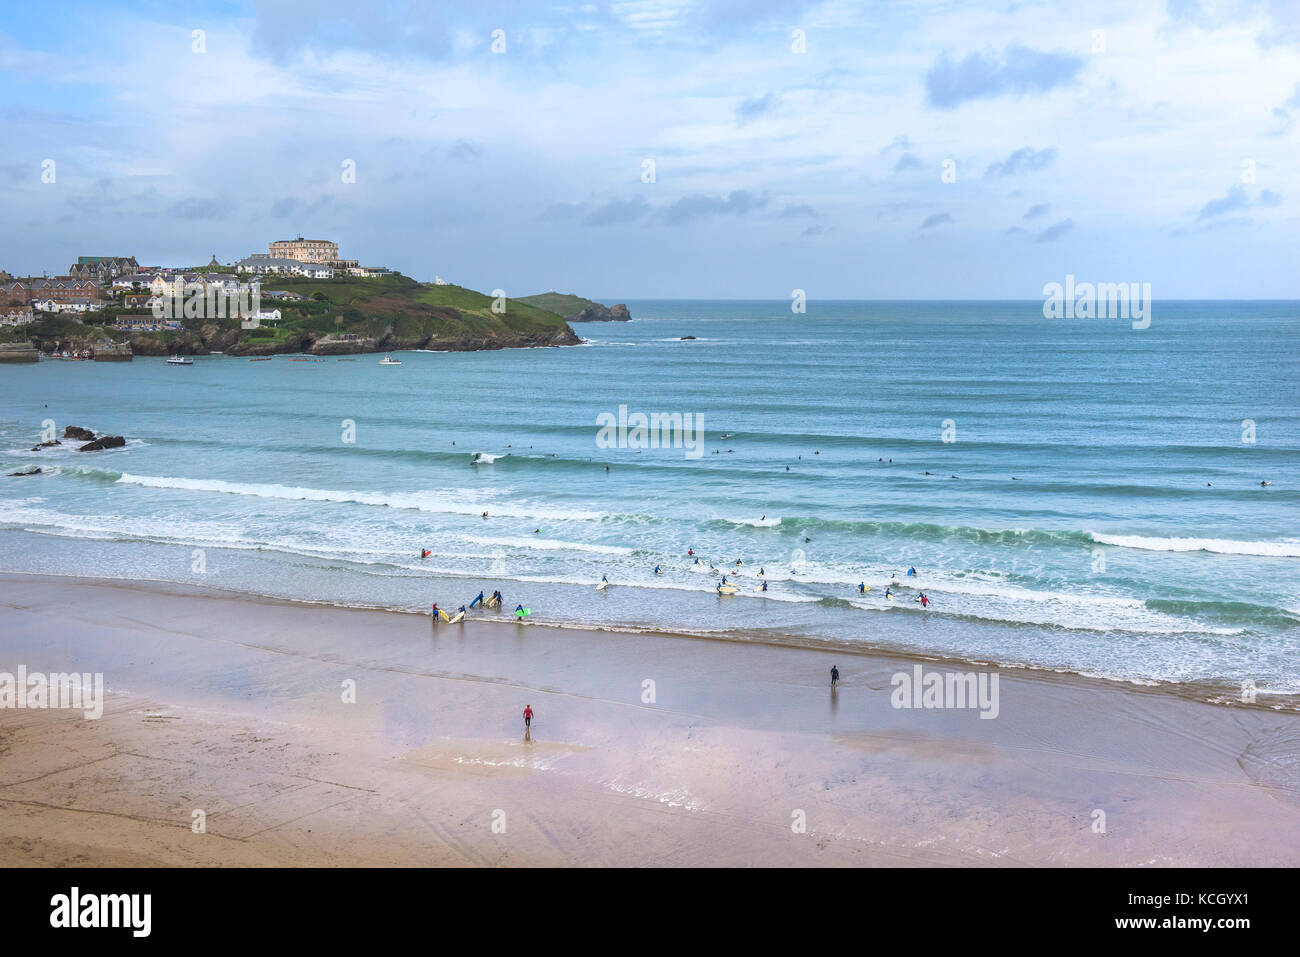 Surfen in Cornwall - Surfaktivitäten am Great Western Beach in Newquay, Cornwall. Stockfoto